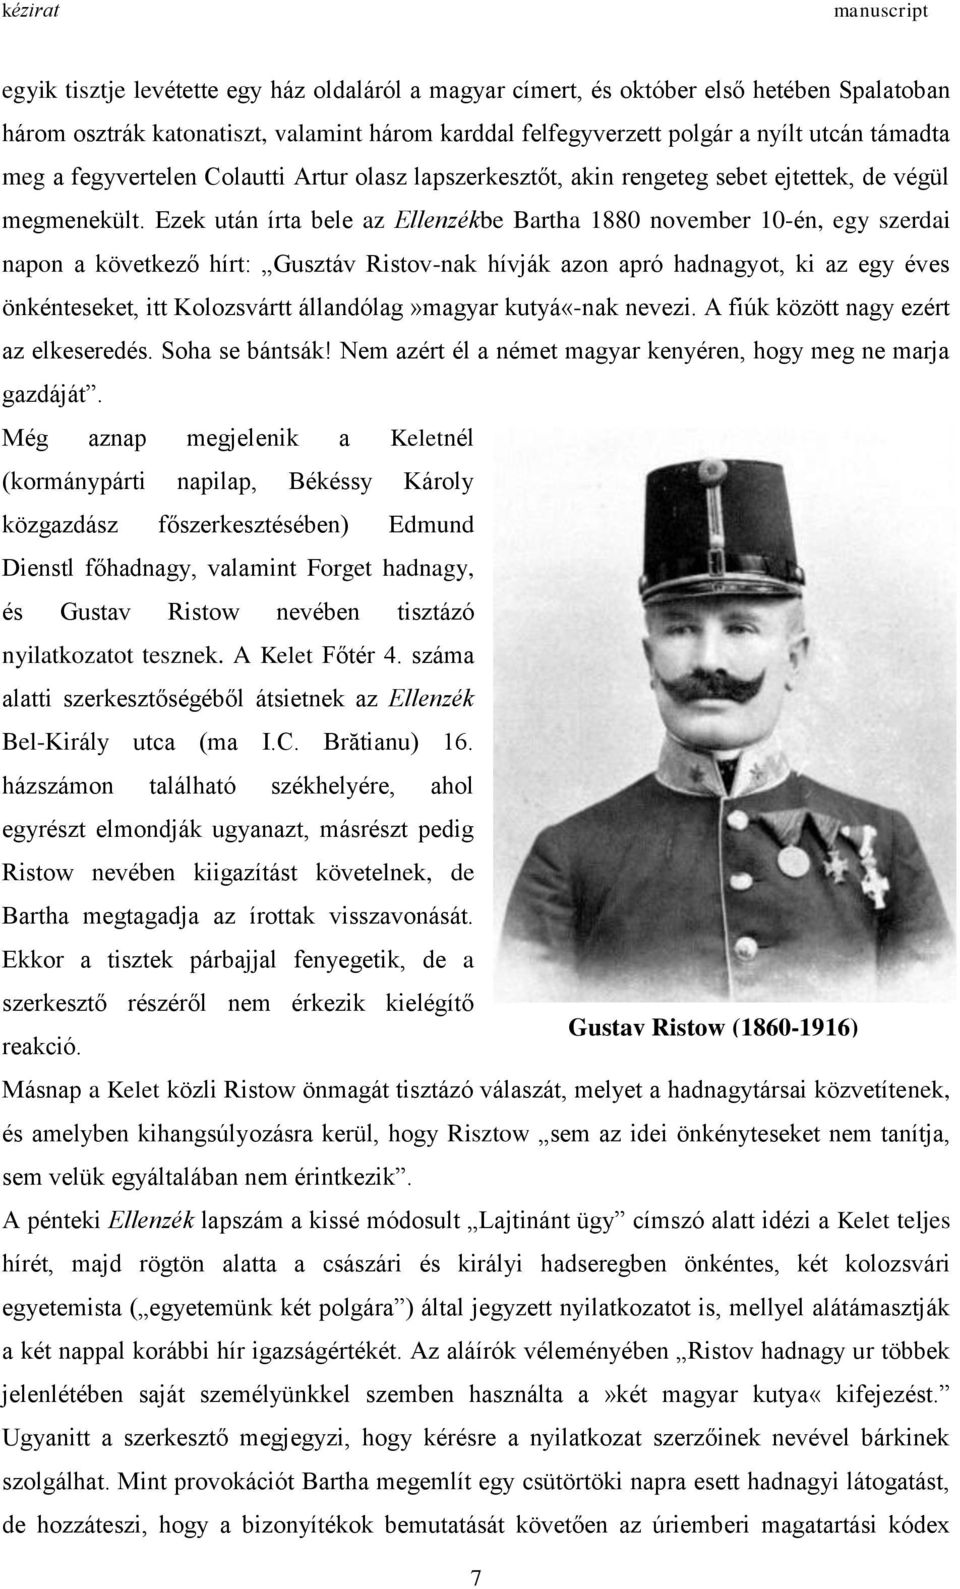 Ezek után írta bele az Ellenzékbe Bartha 1880 november 10-én, egy szerdai napon a következő hírt: Gusztáv Ristov-nak hívják azon apró hadnagyot, ki az egy éves önkénteseket, itt Kolozsvártt